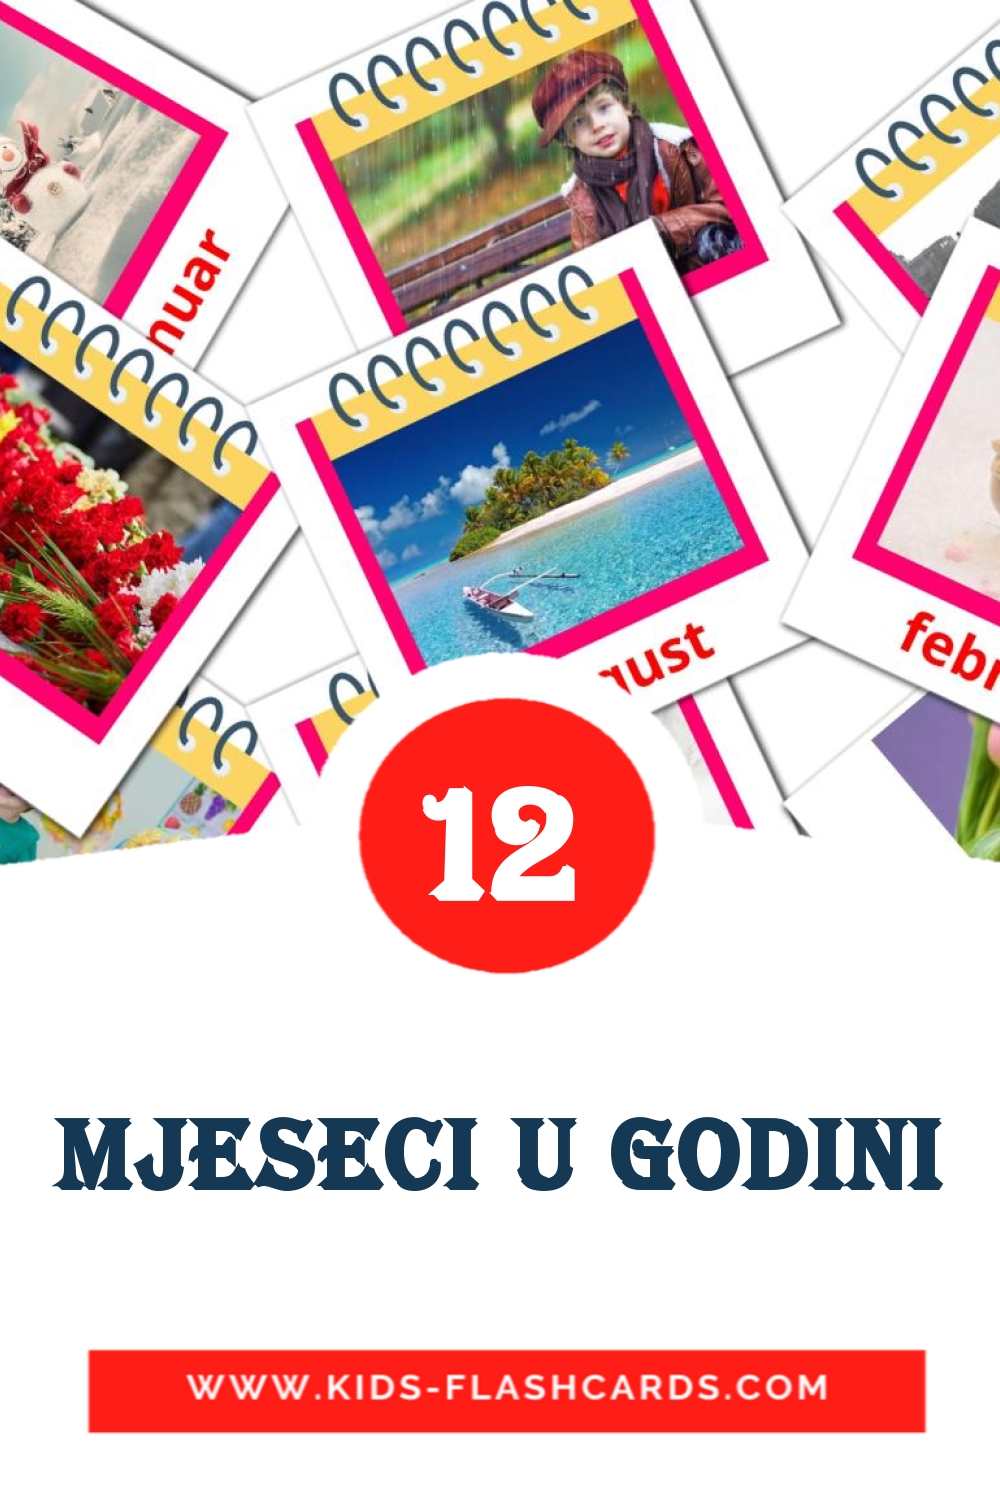 12 tarjetas didacticas de mjeseci u godini para el jardín de infancia en bosnio